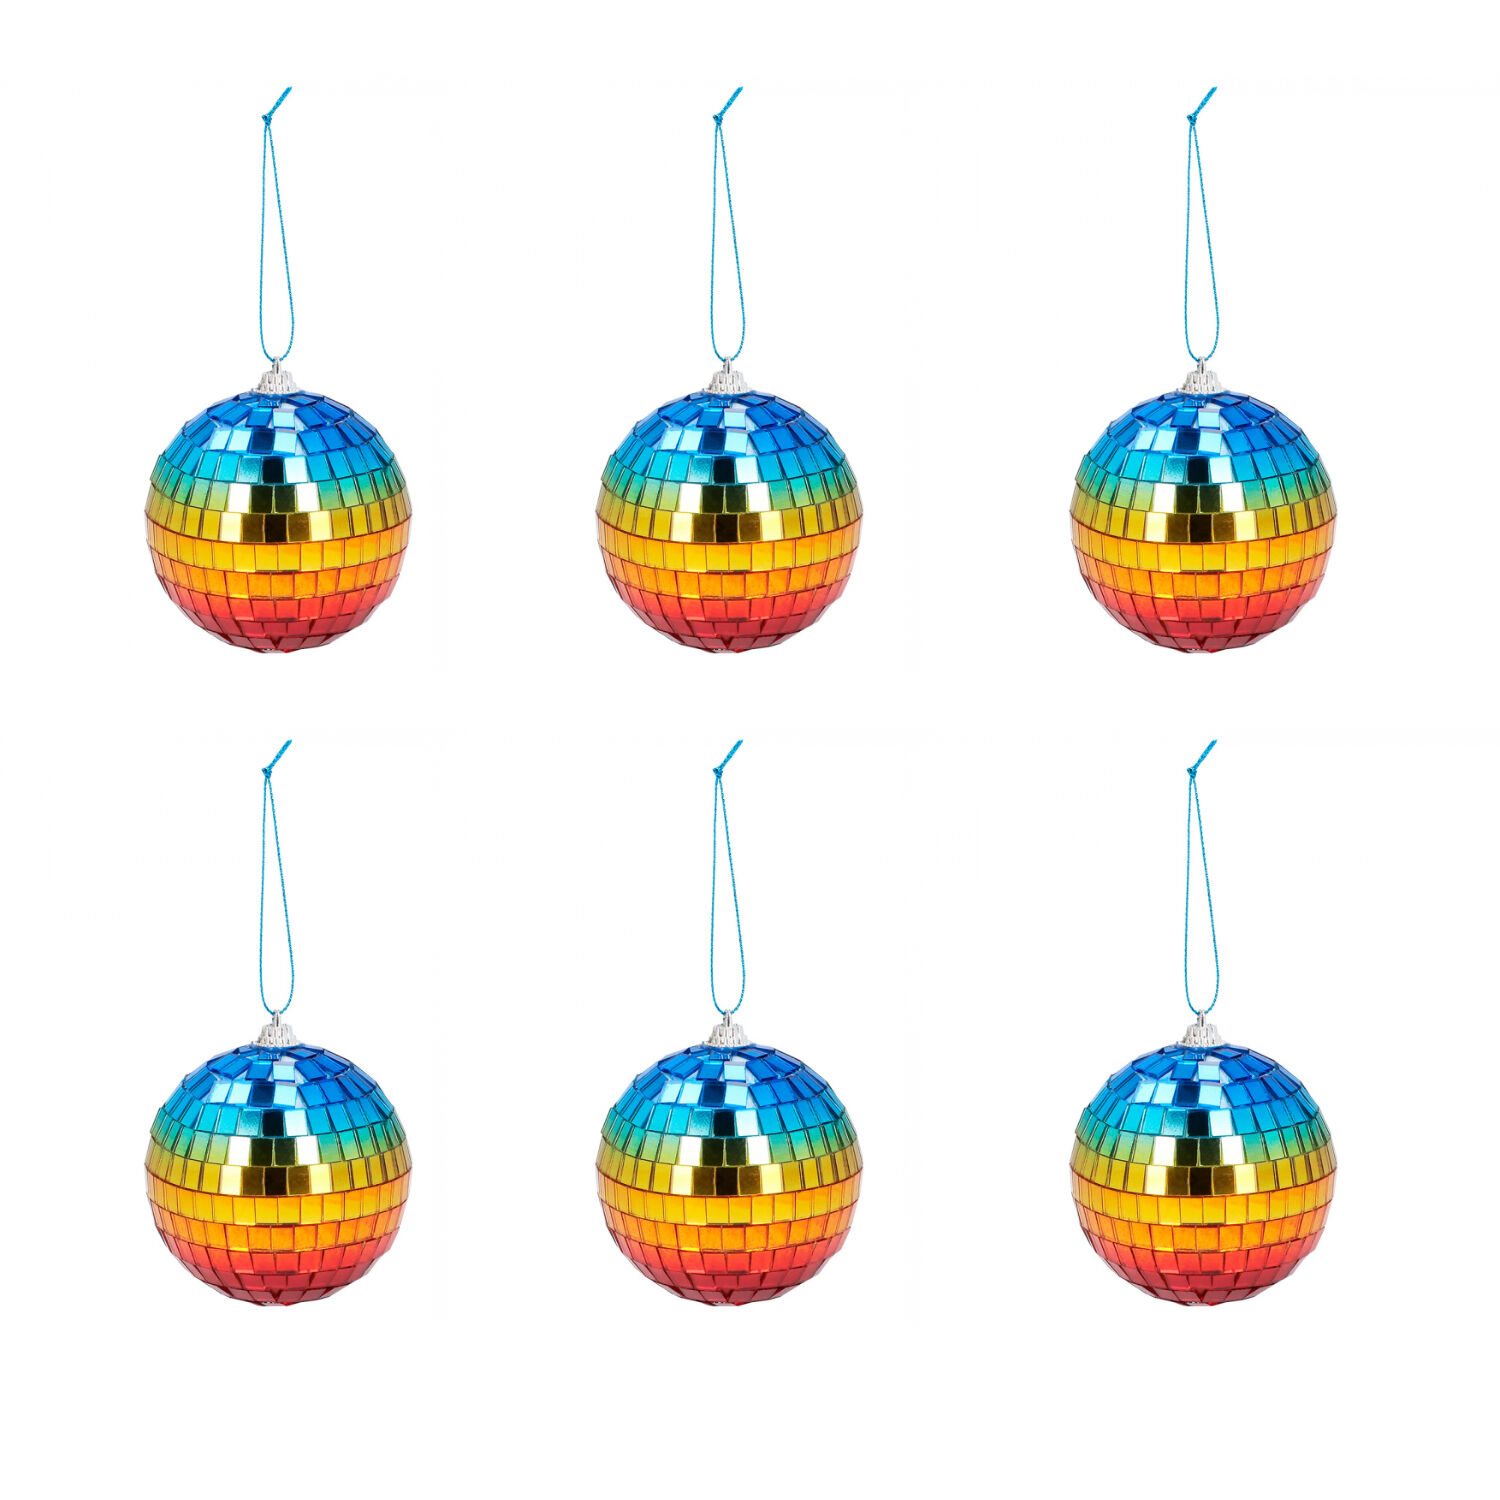 NEU Mini-Disco-Kugeln regenbogen, 8cm, mit Aufhänger, 6 Stück -  Party-Dekoration Regenbogen / Pride Motto-Party Produkte 